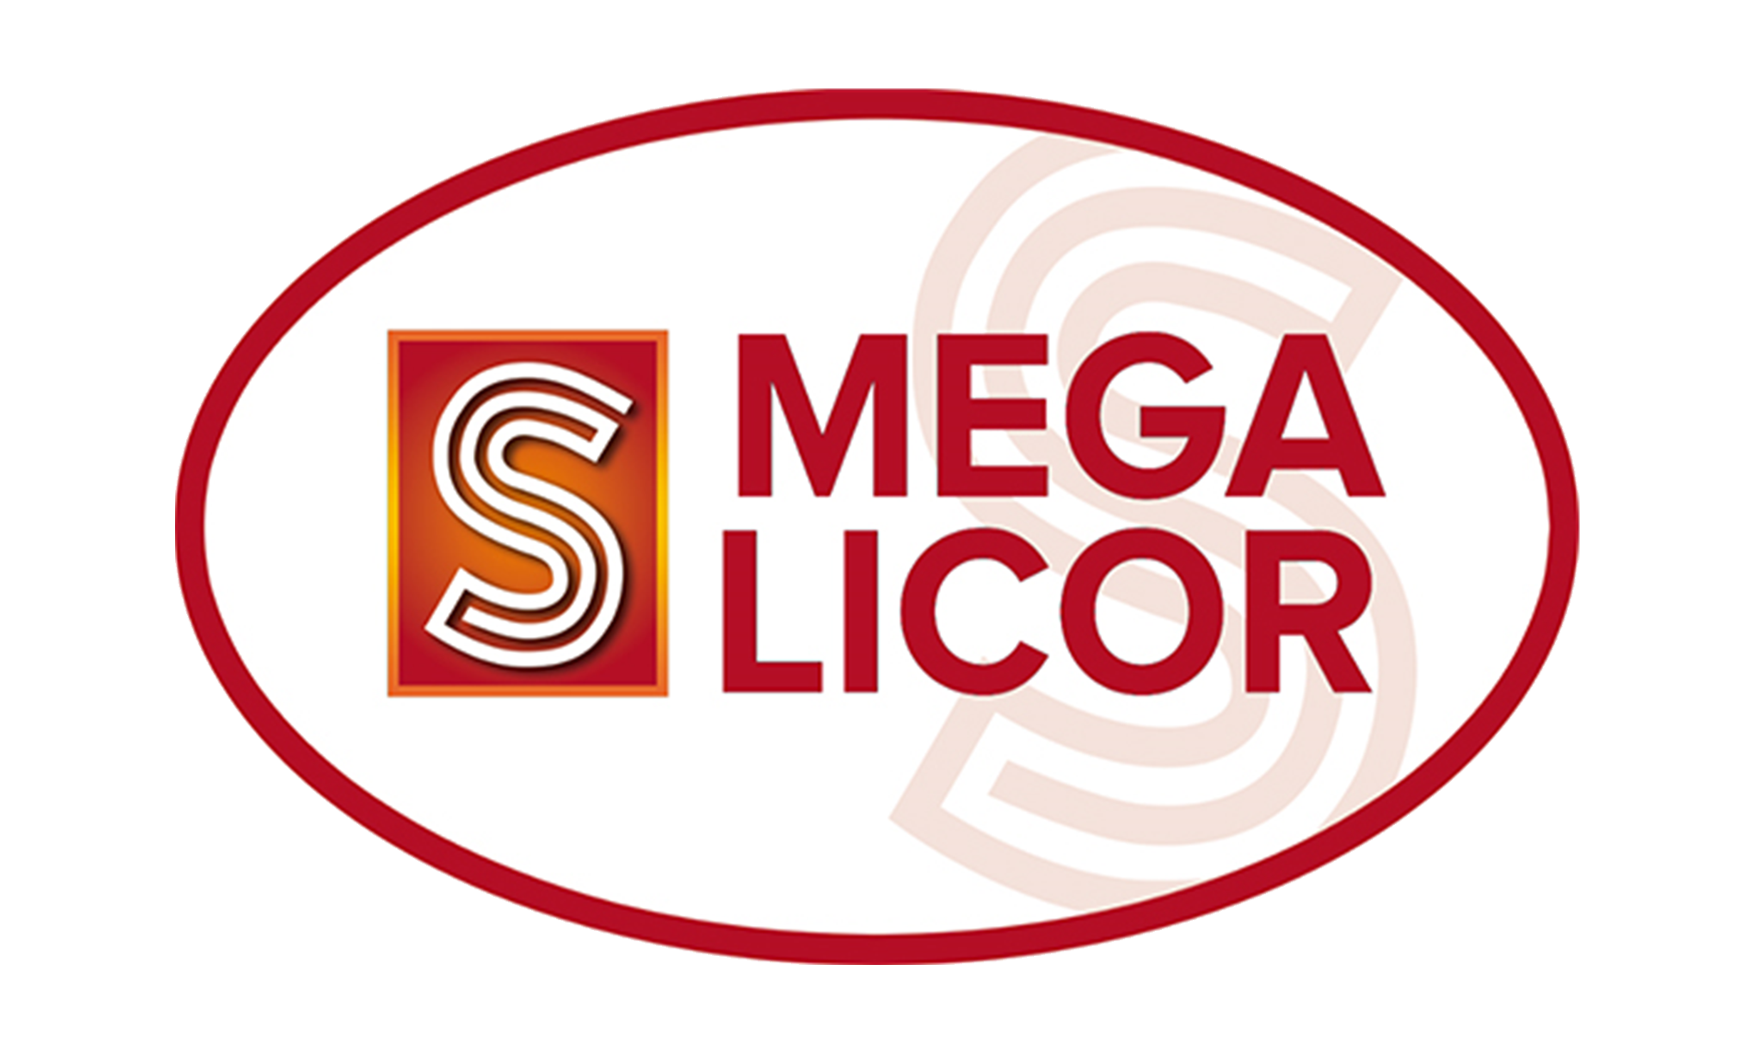 Megalicor